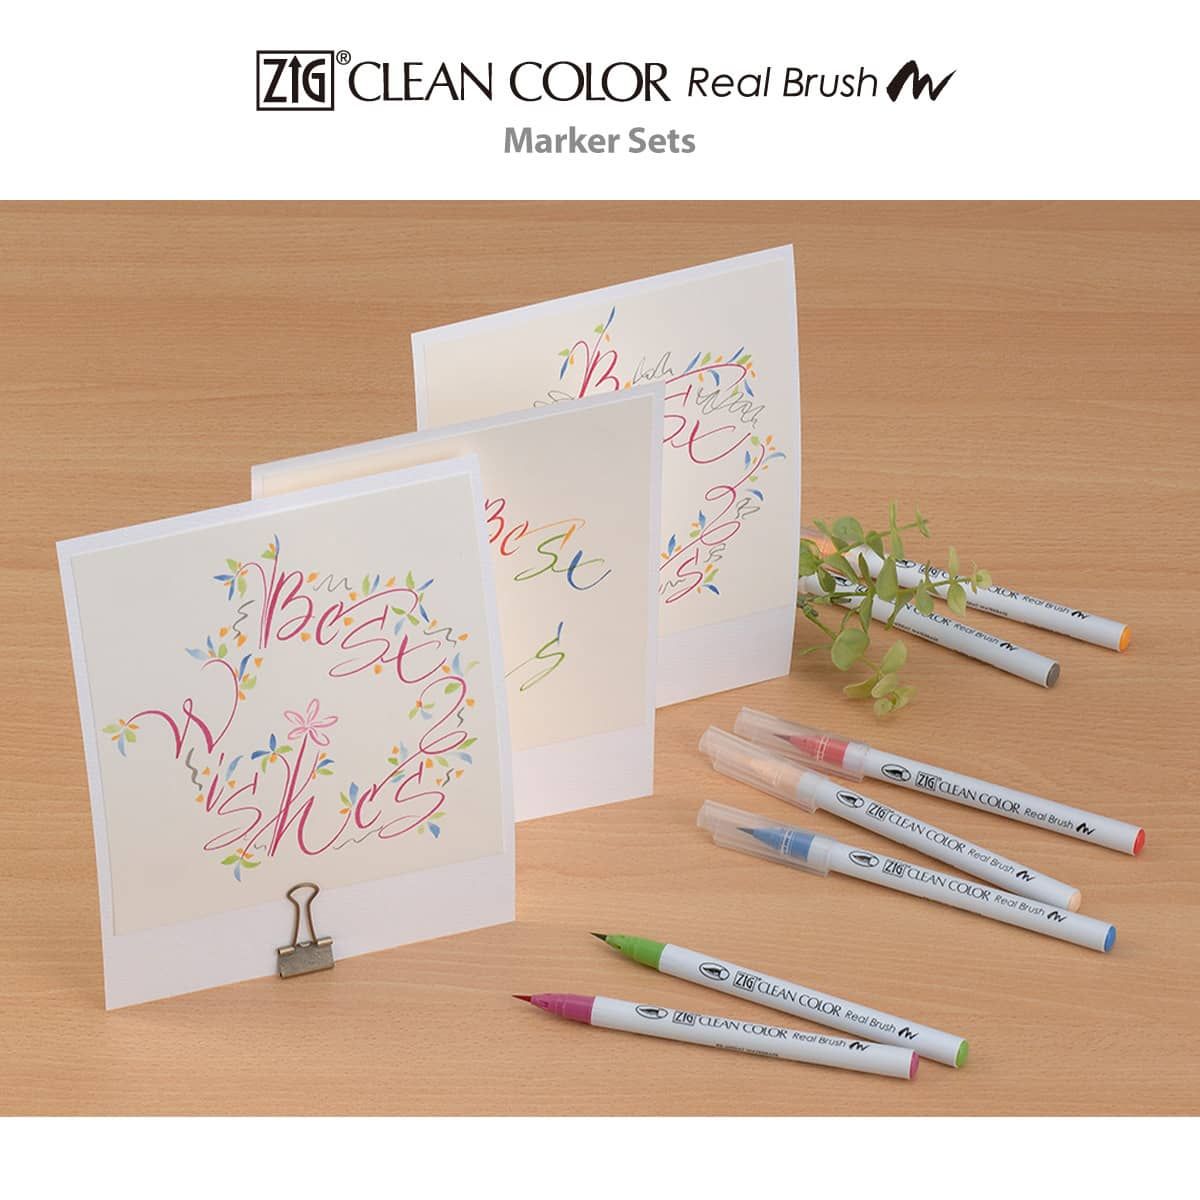 Kuretake Zig Clean Color Real Brush Marker Sets